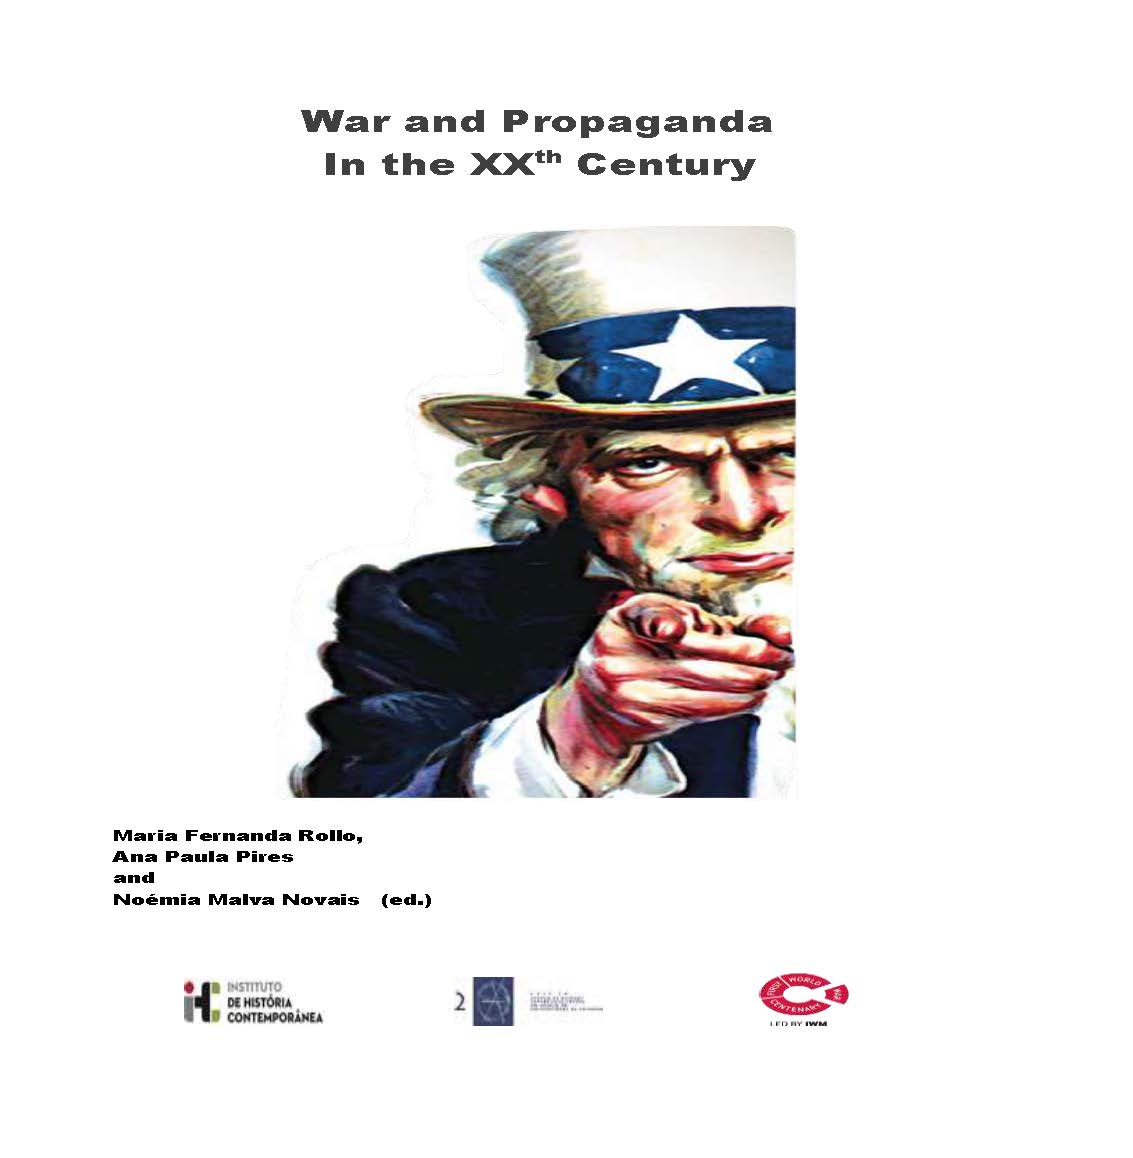 Imagen de portada del libro War and propaganda in the XXth Century